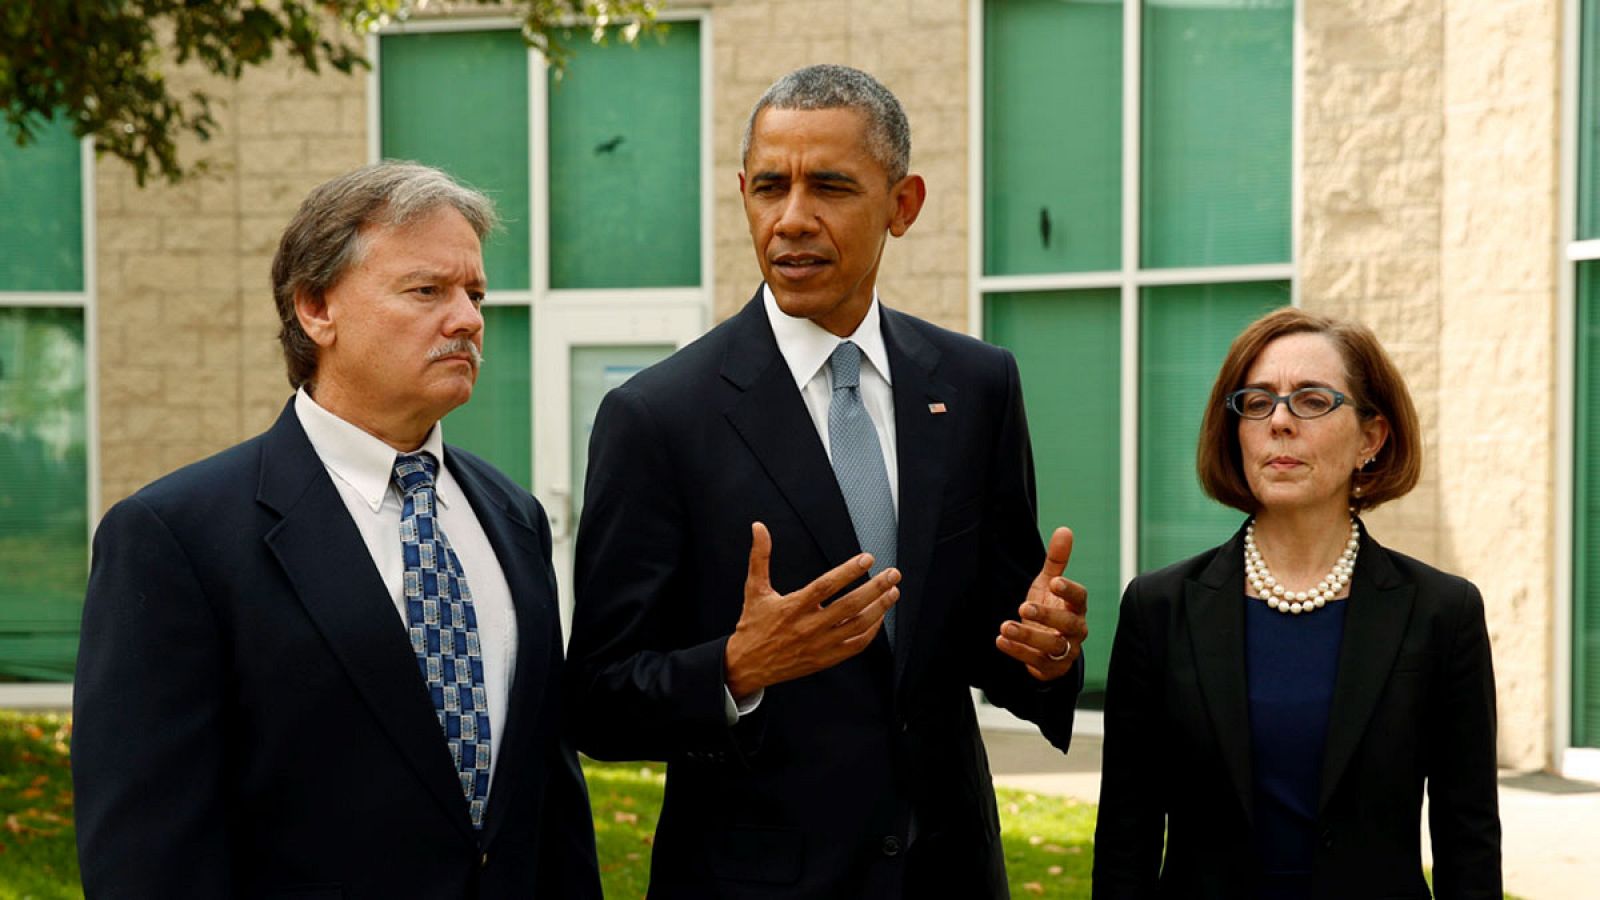 El presidente de Estados Unidos, Barack Obama, el alcalde de Roseburg, Larry Rich y la gobernadora de Oregón, Kate Brown, tras el ecuentro con las víctimas del tiroteo.